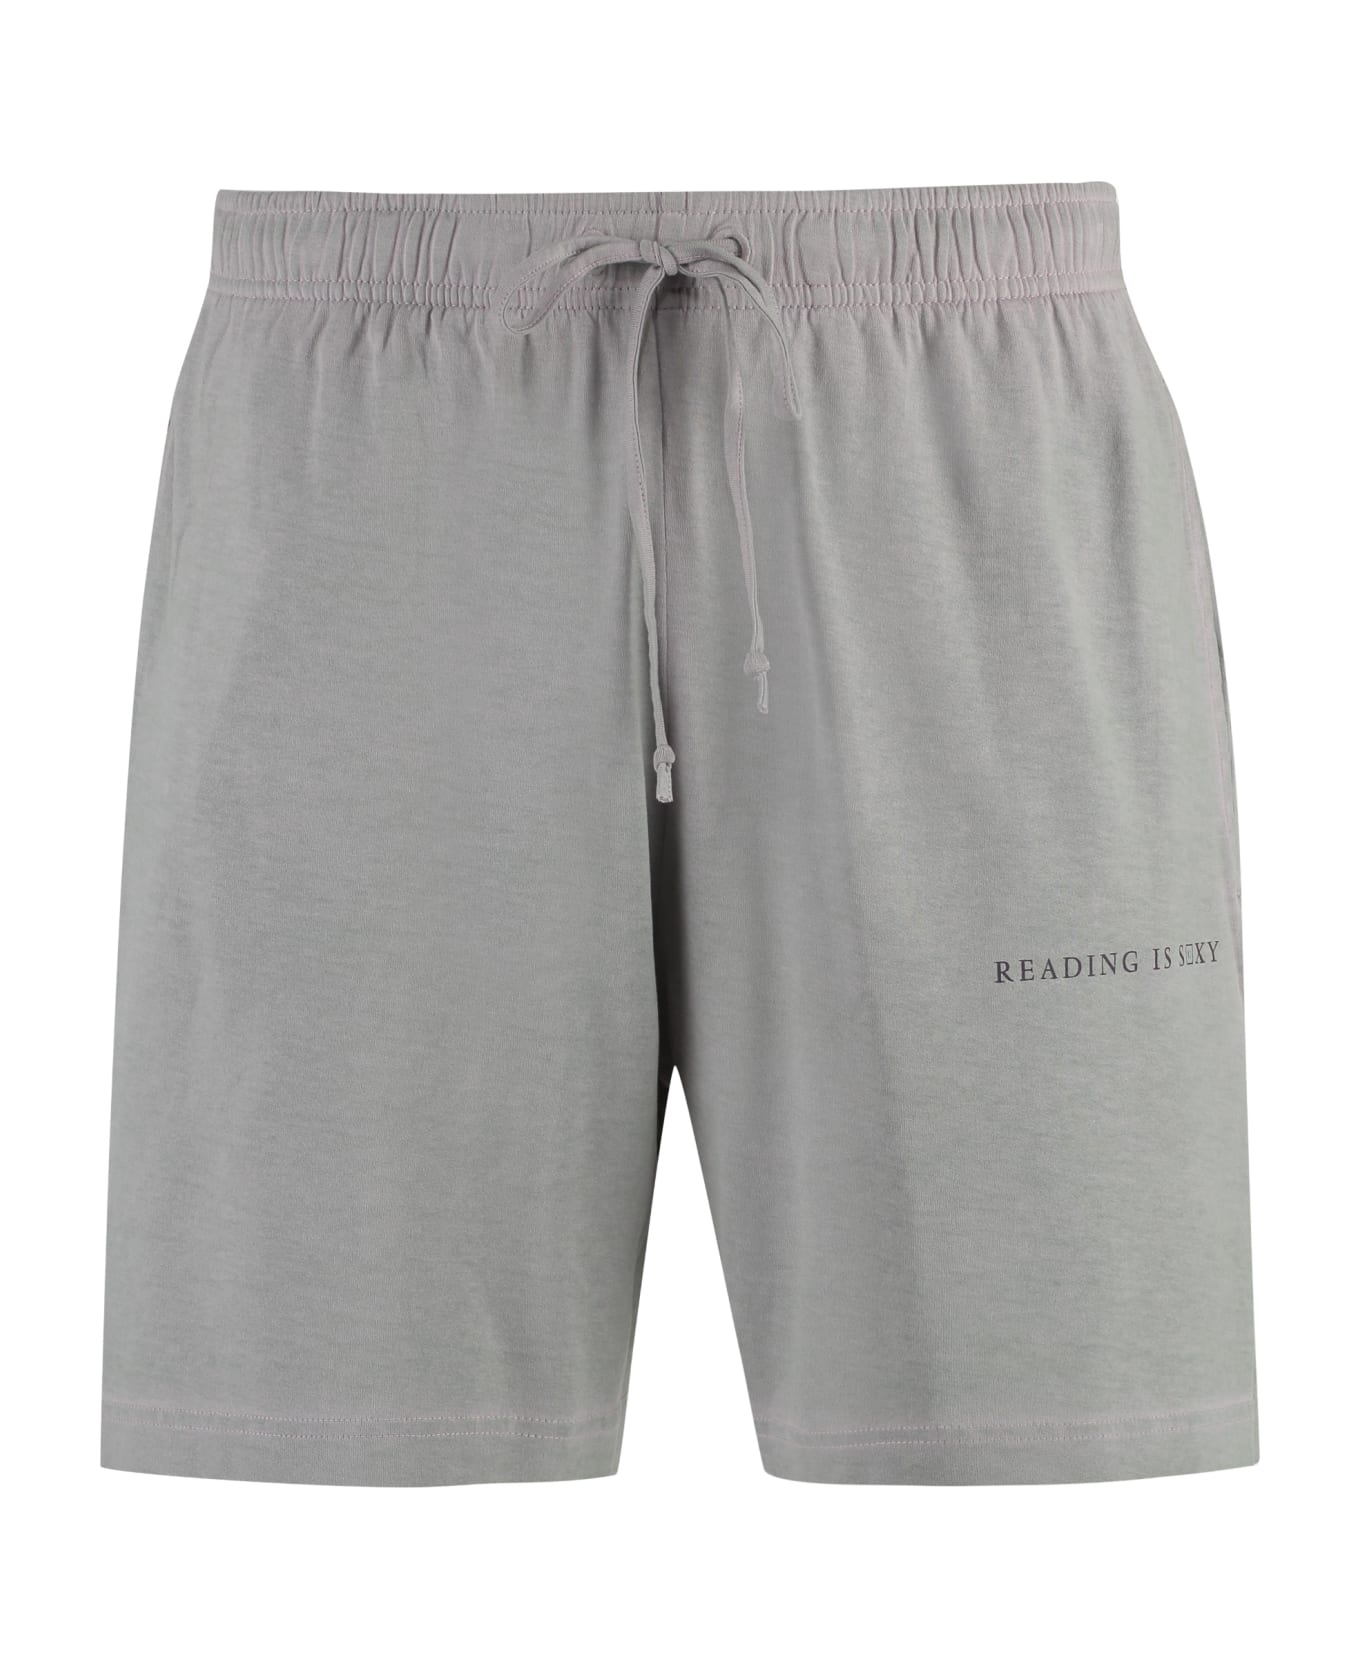 Acne Studios Bermuda Shorts - grey